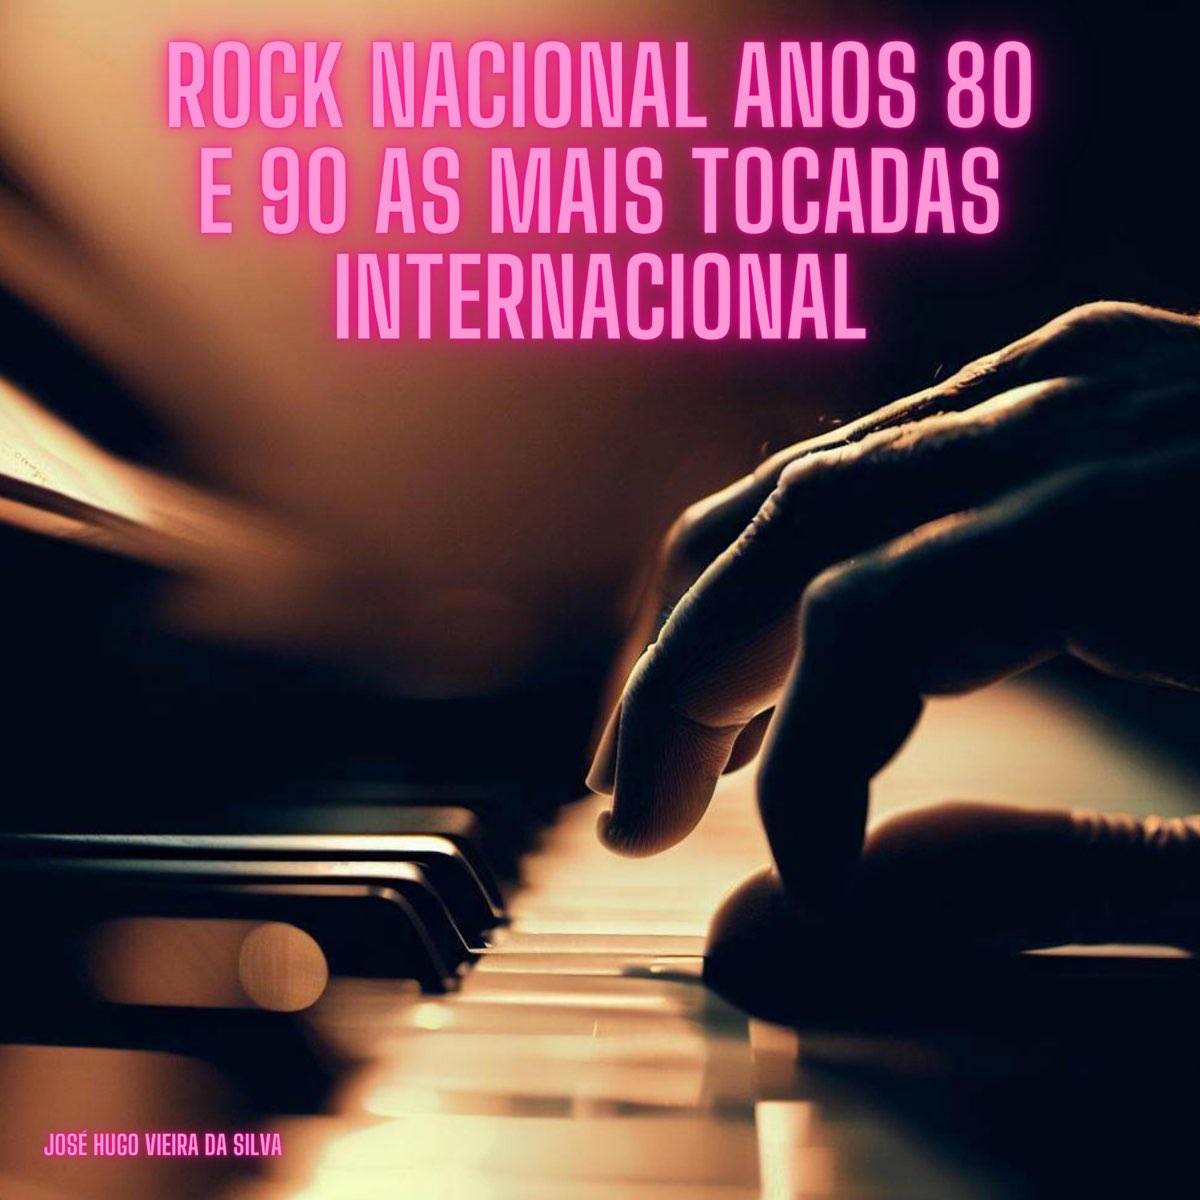 Rock nacional anos 80 e 90 as mais tocadas internacional - Single - Album  by José Hugo Vieira da Silva - Apple Music